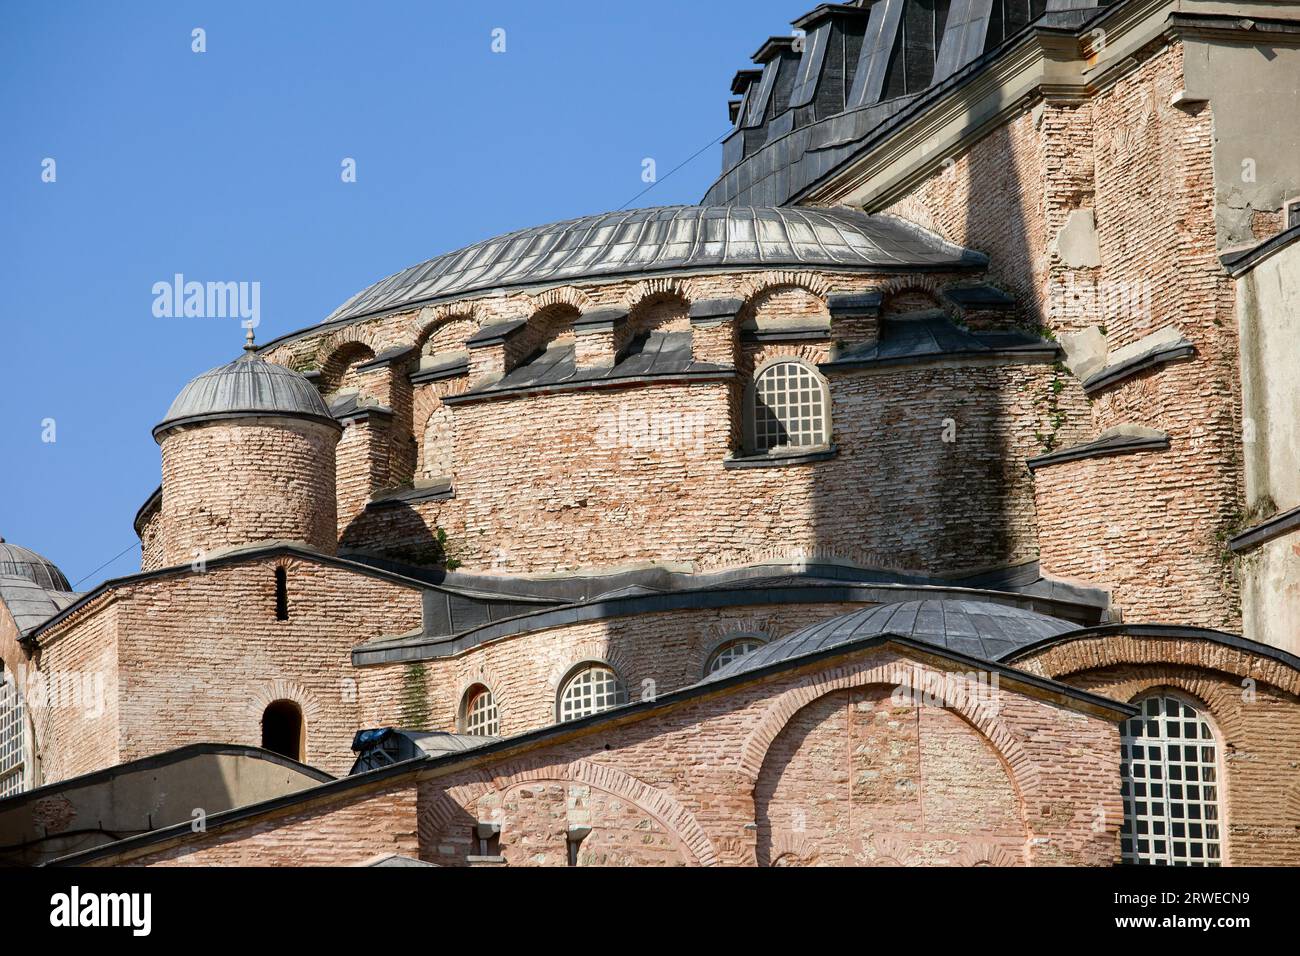 Dettagli architettonici bizantini di Hagia Sophia (la chiesa della Santa Sapienza o Ayasofya in turco), un famoso punto di riferimento storico a Istanbul Foto Stock